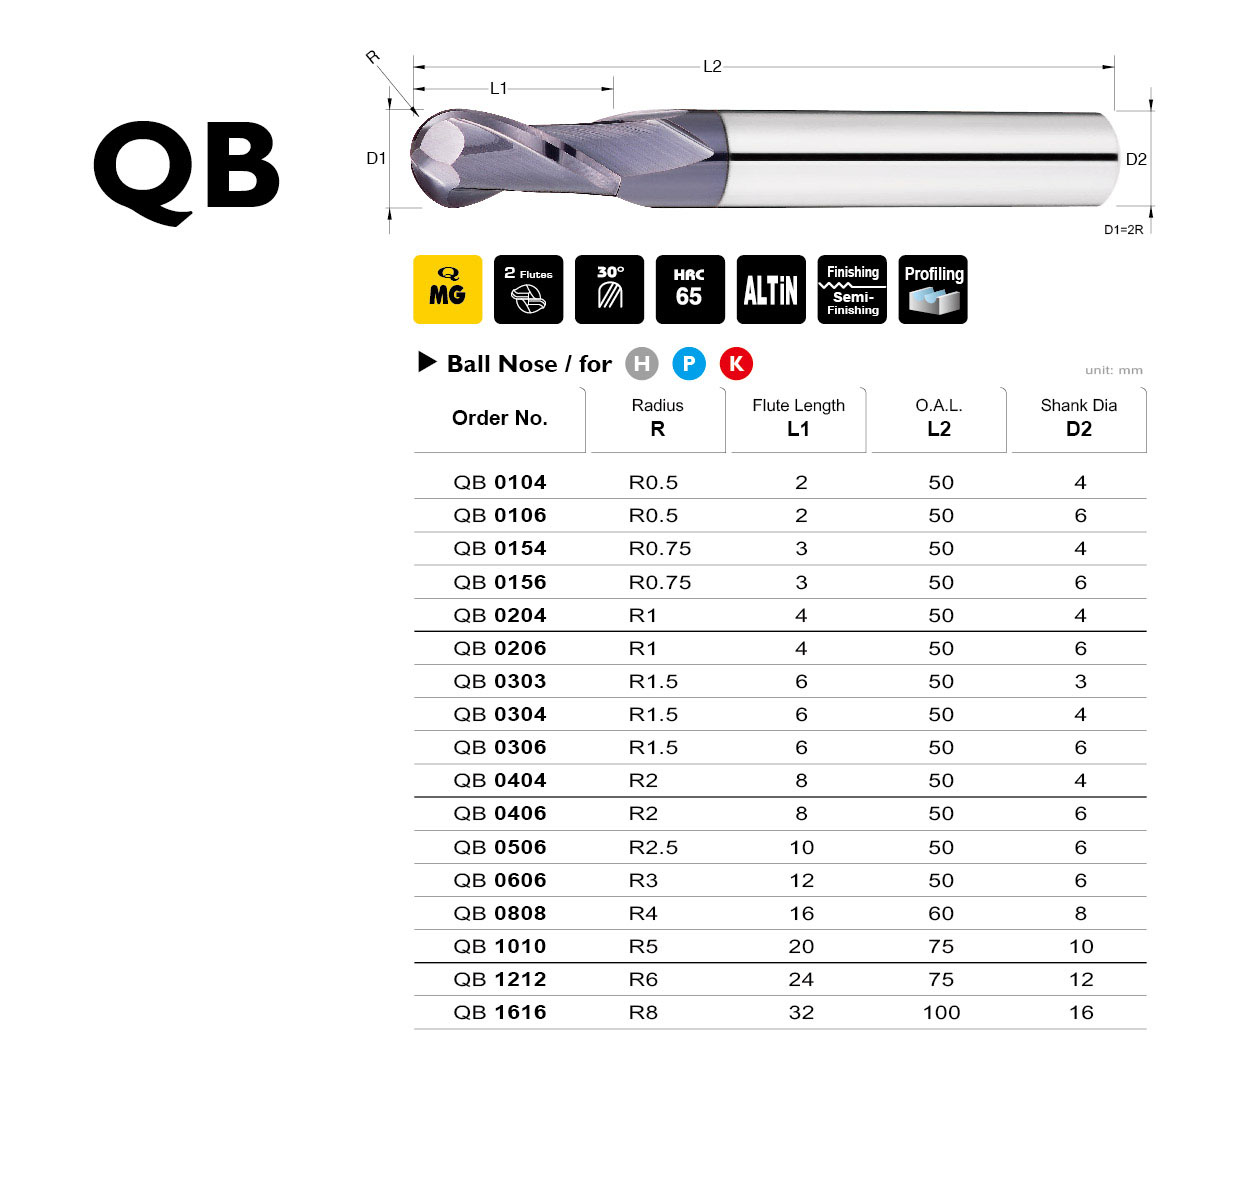 Catalog|QB series